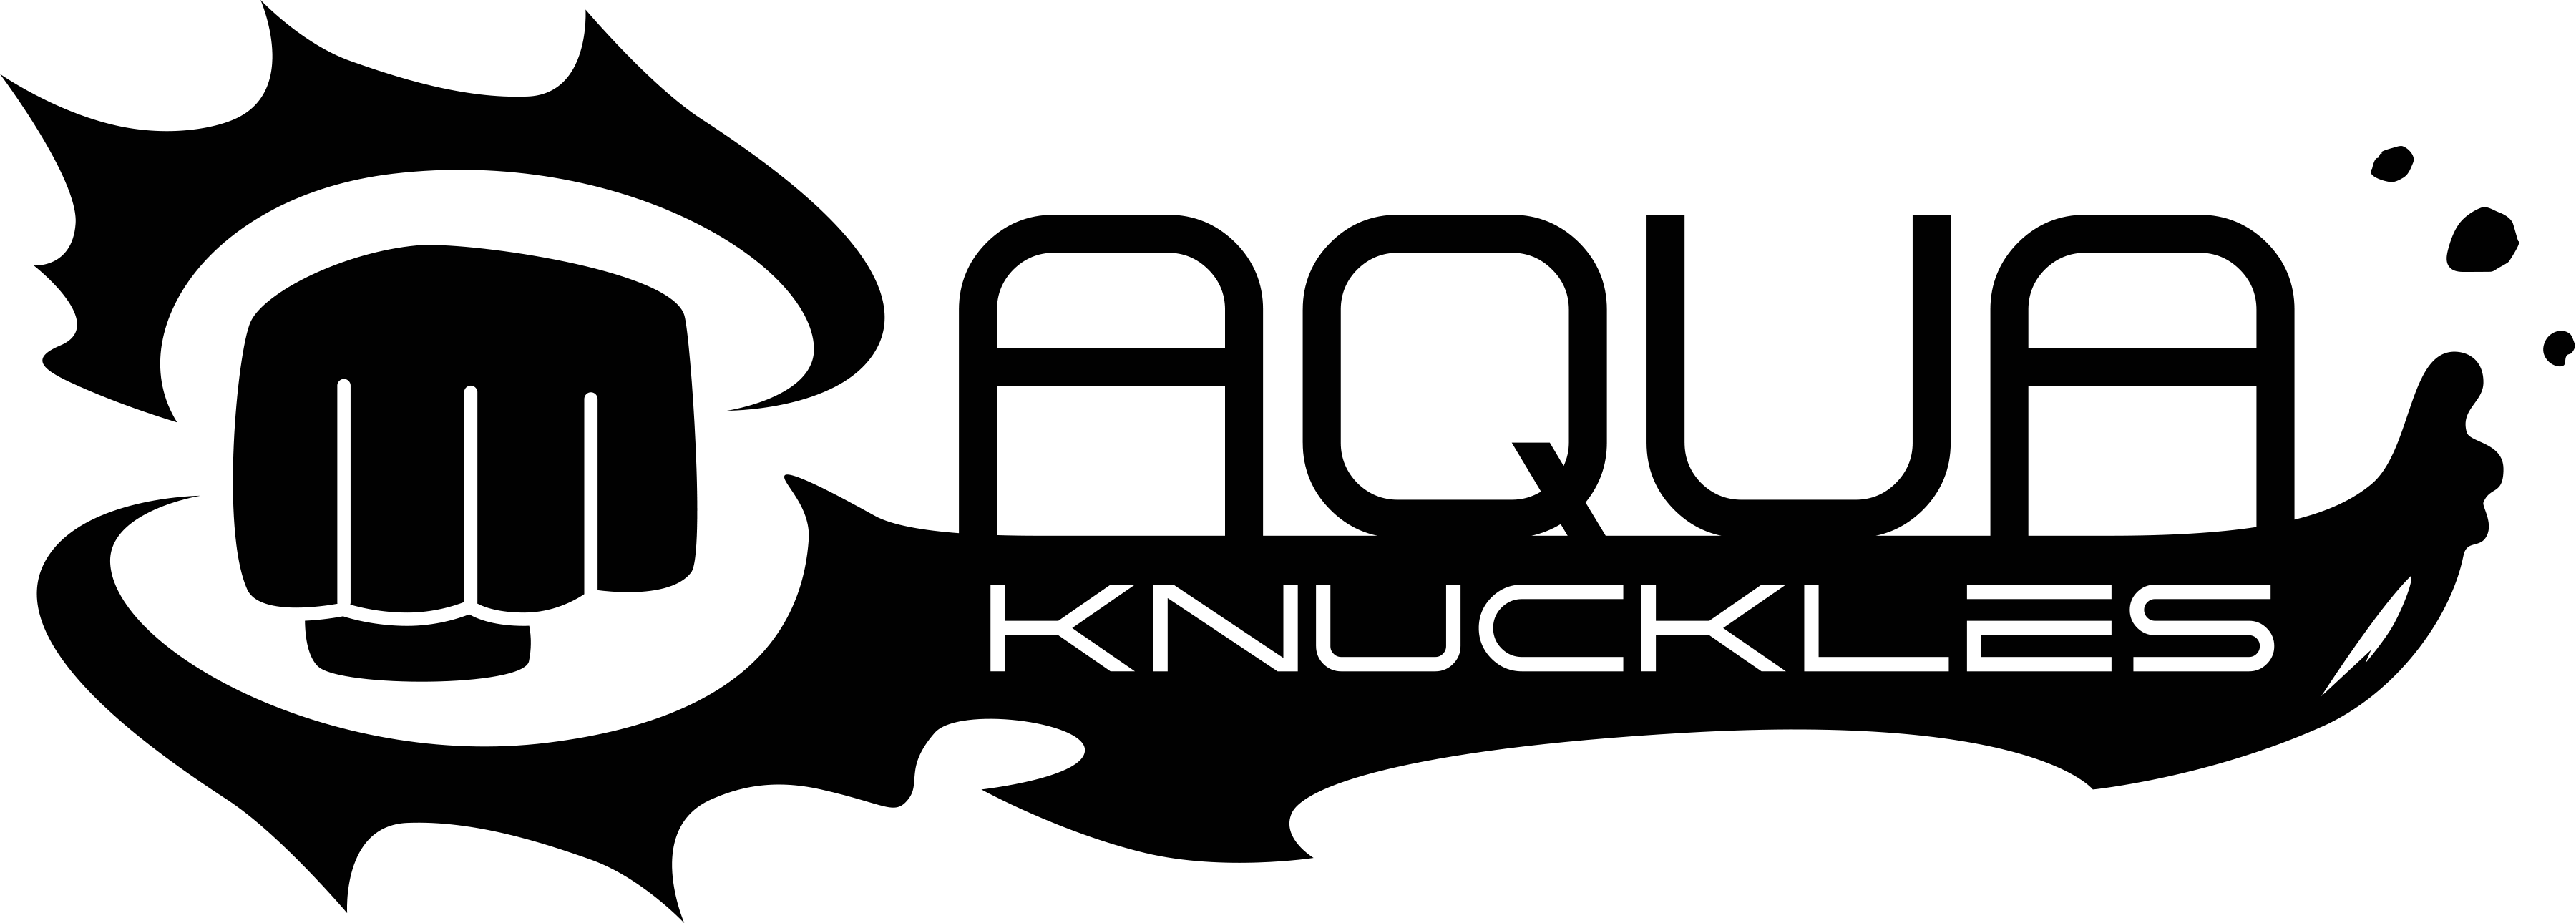 aquaknuckles logo.png